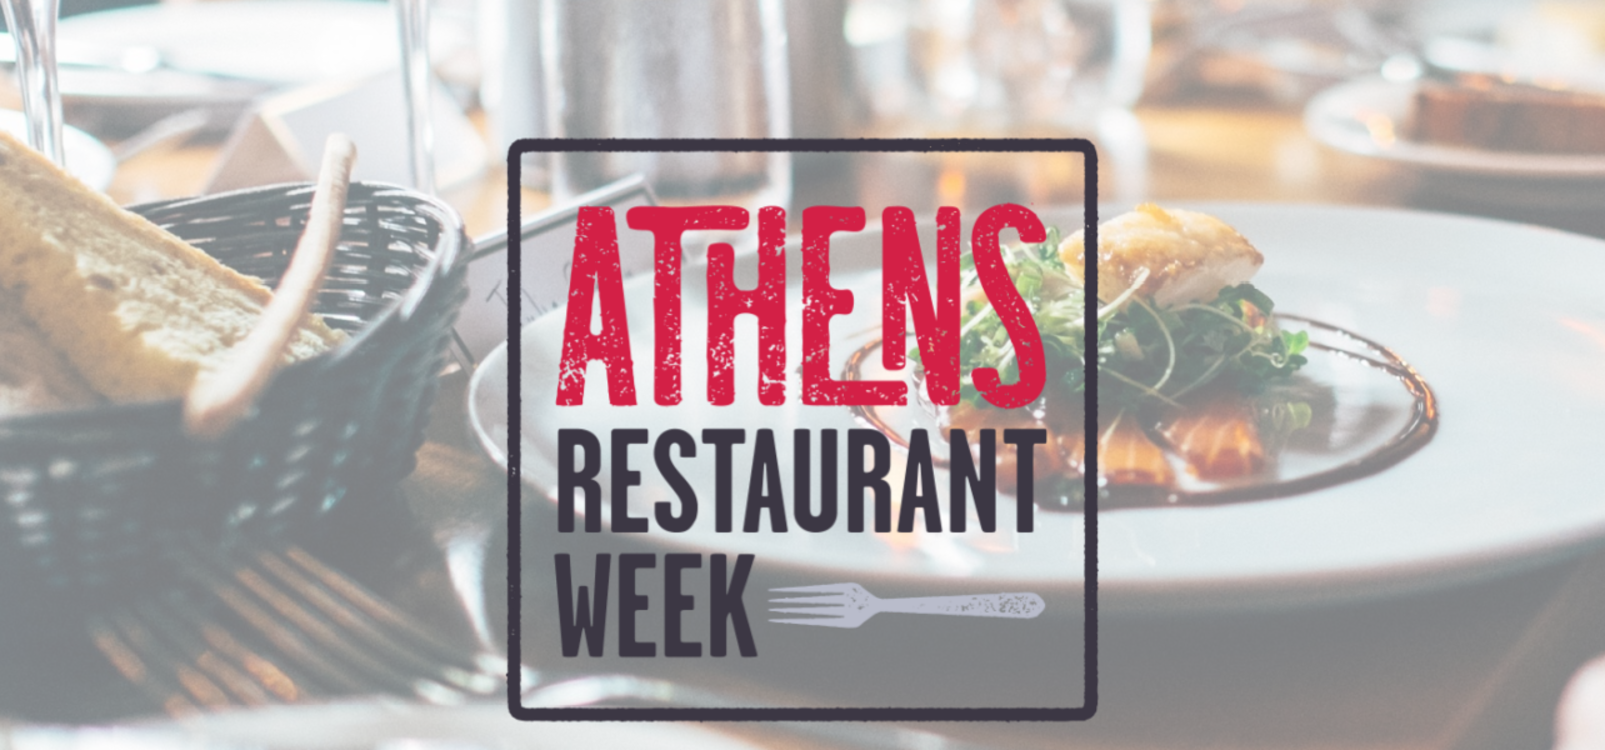 Athens Ga Restaurant Week